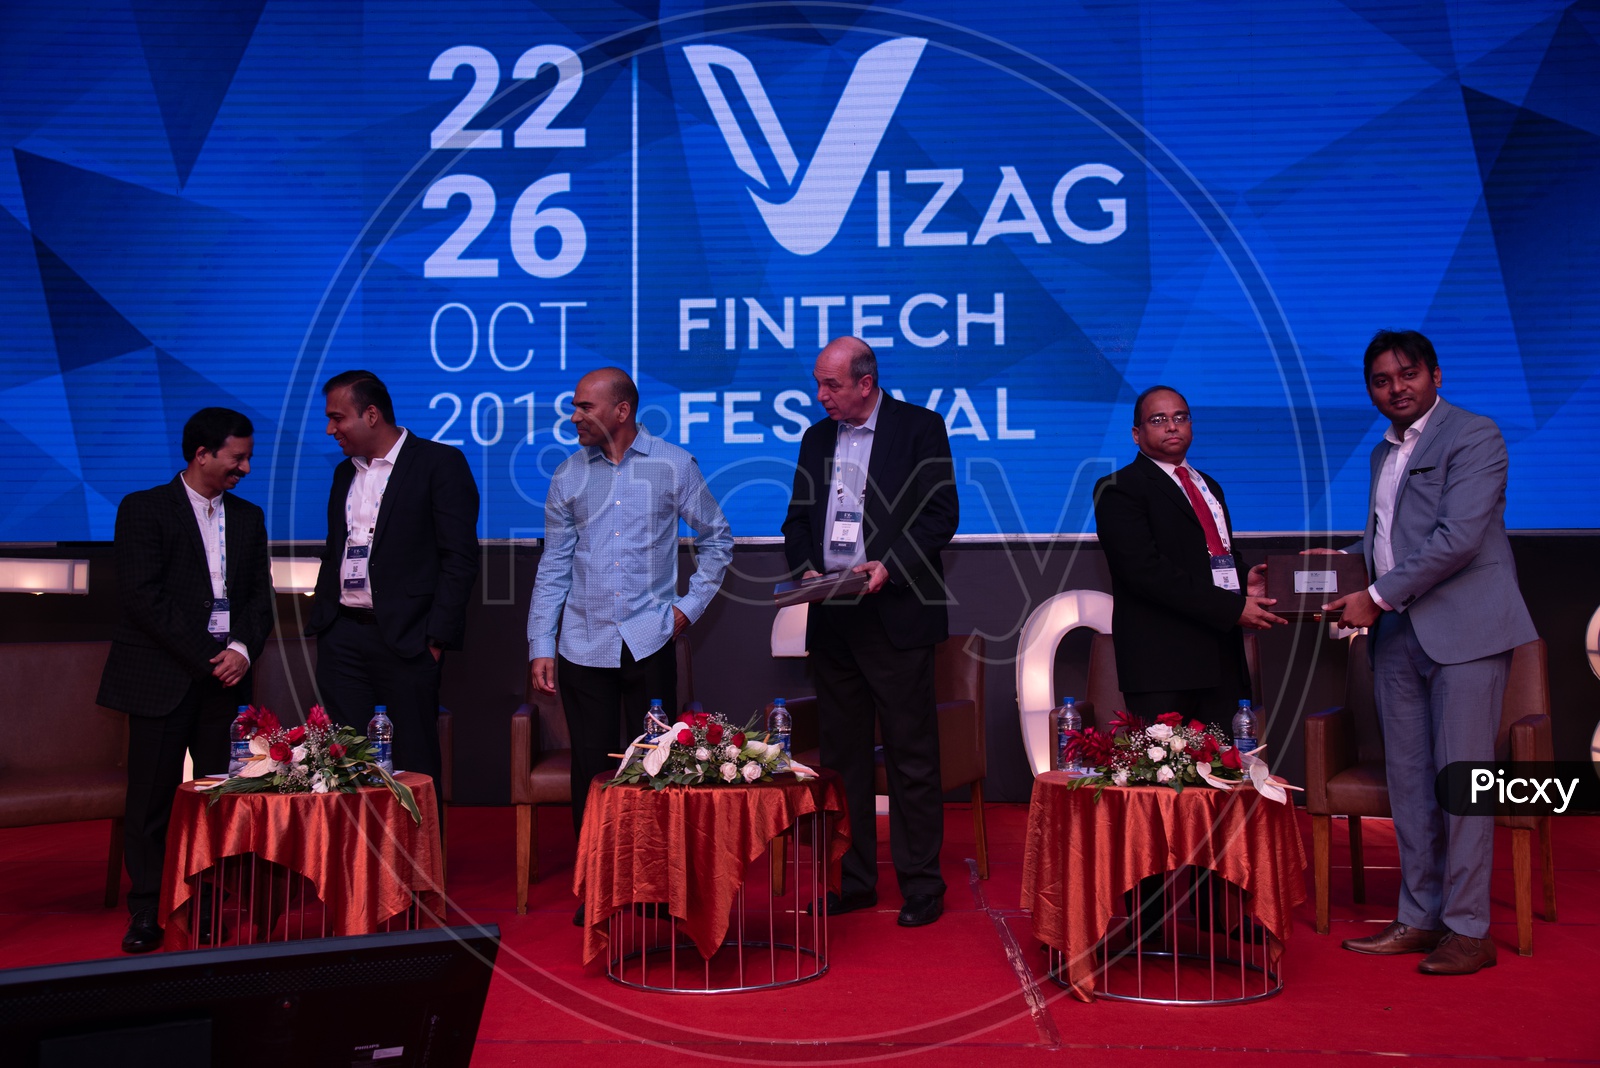 Delegates at Vizag Fintech Fest